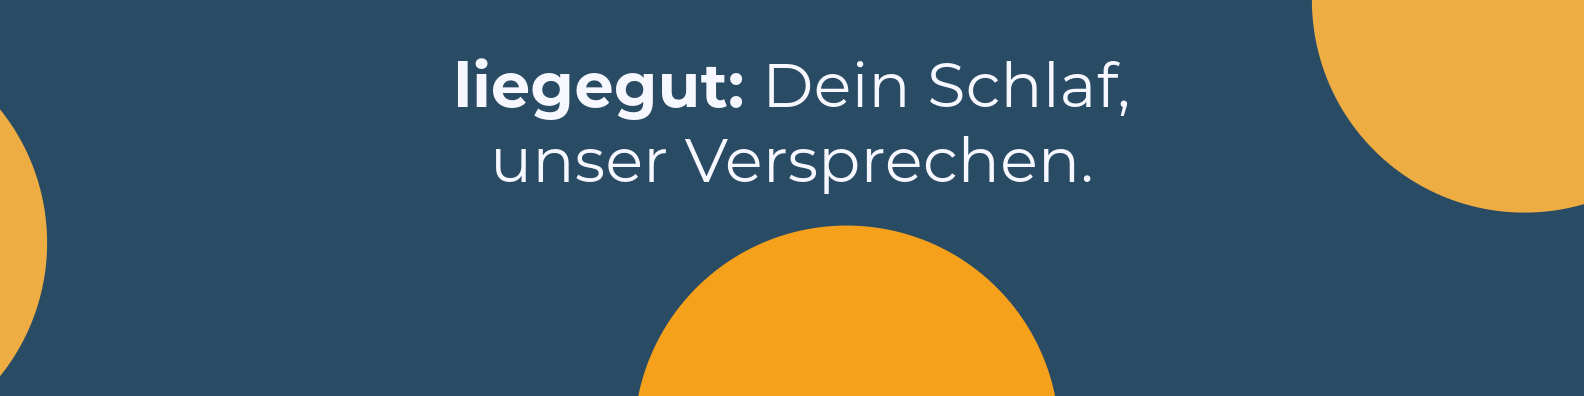 liegegut / startup from Ulm / Background